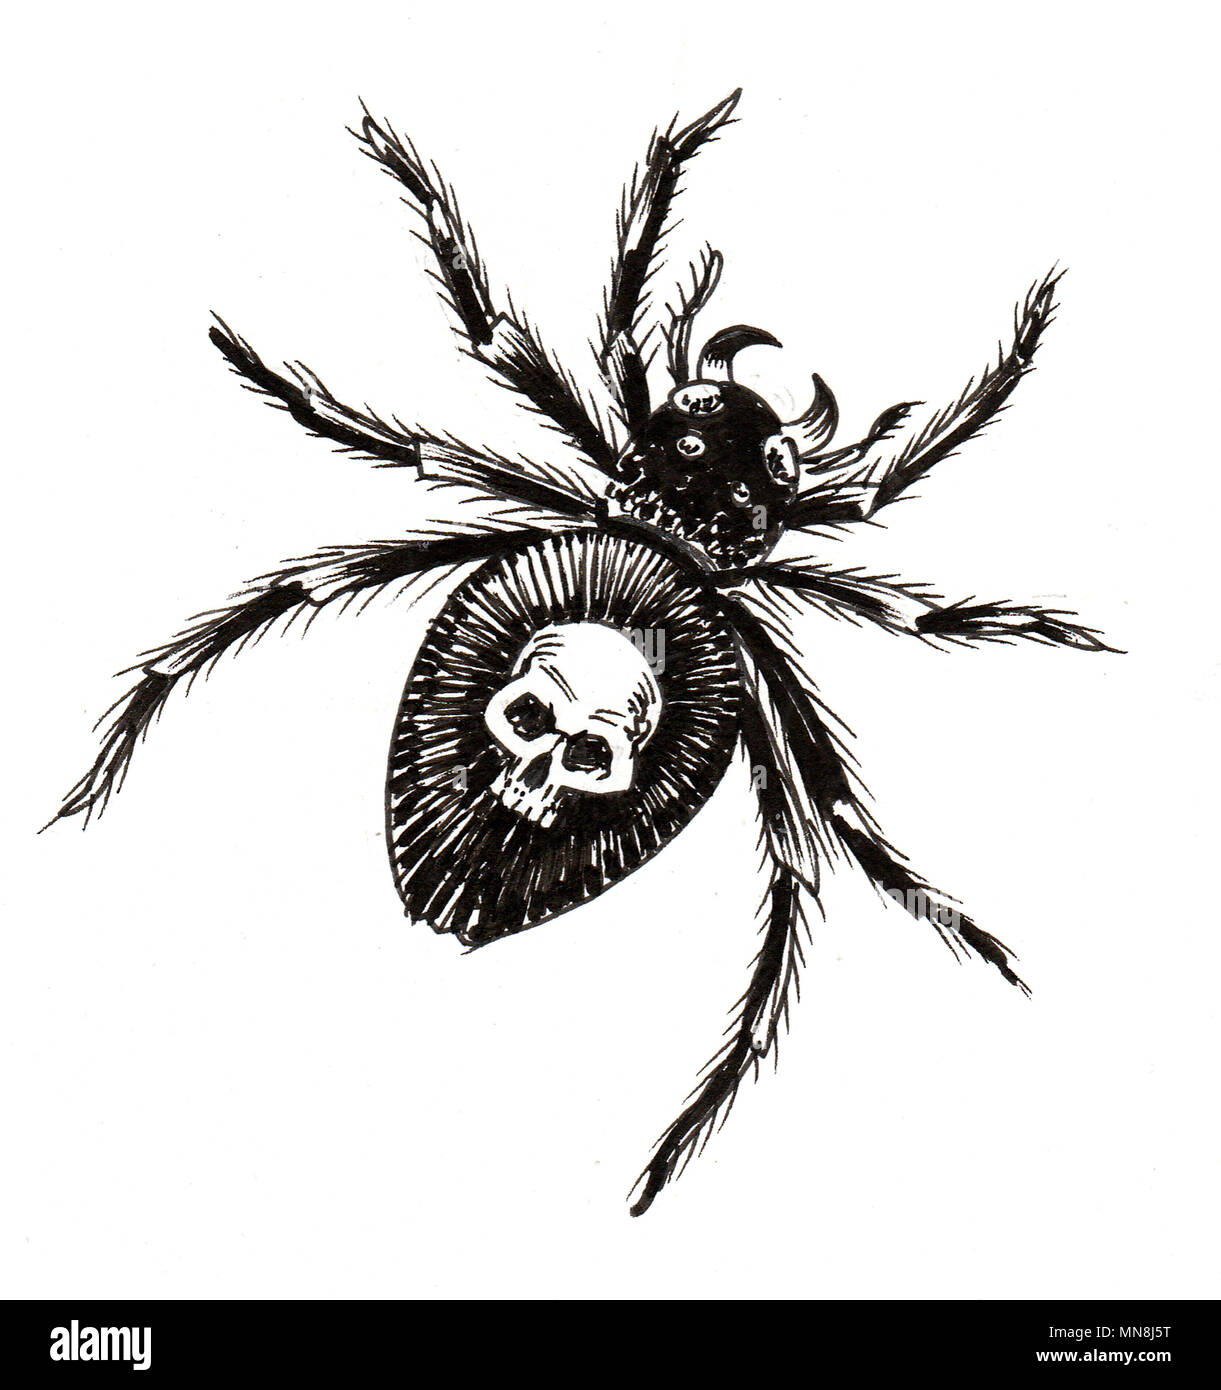 Tinte schwarz-weiss Zeichnung einer giftigen Spinne Stockfotografie - Alamy